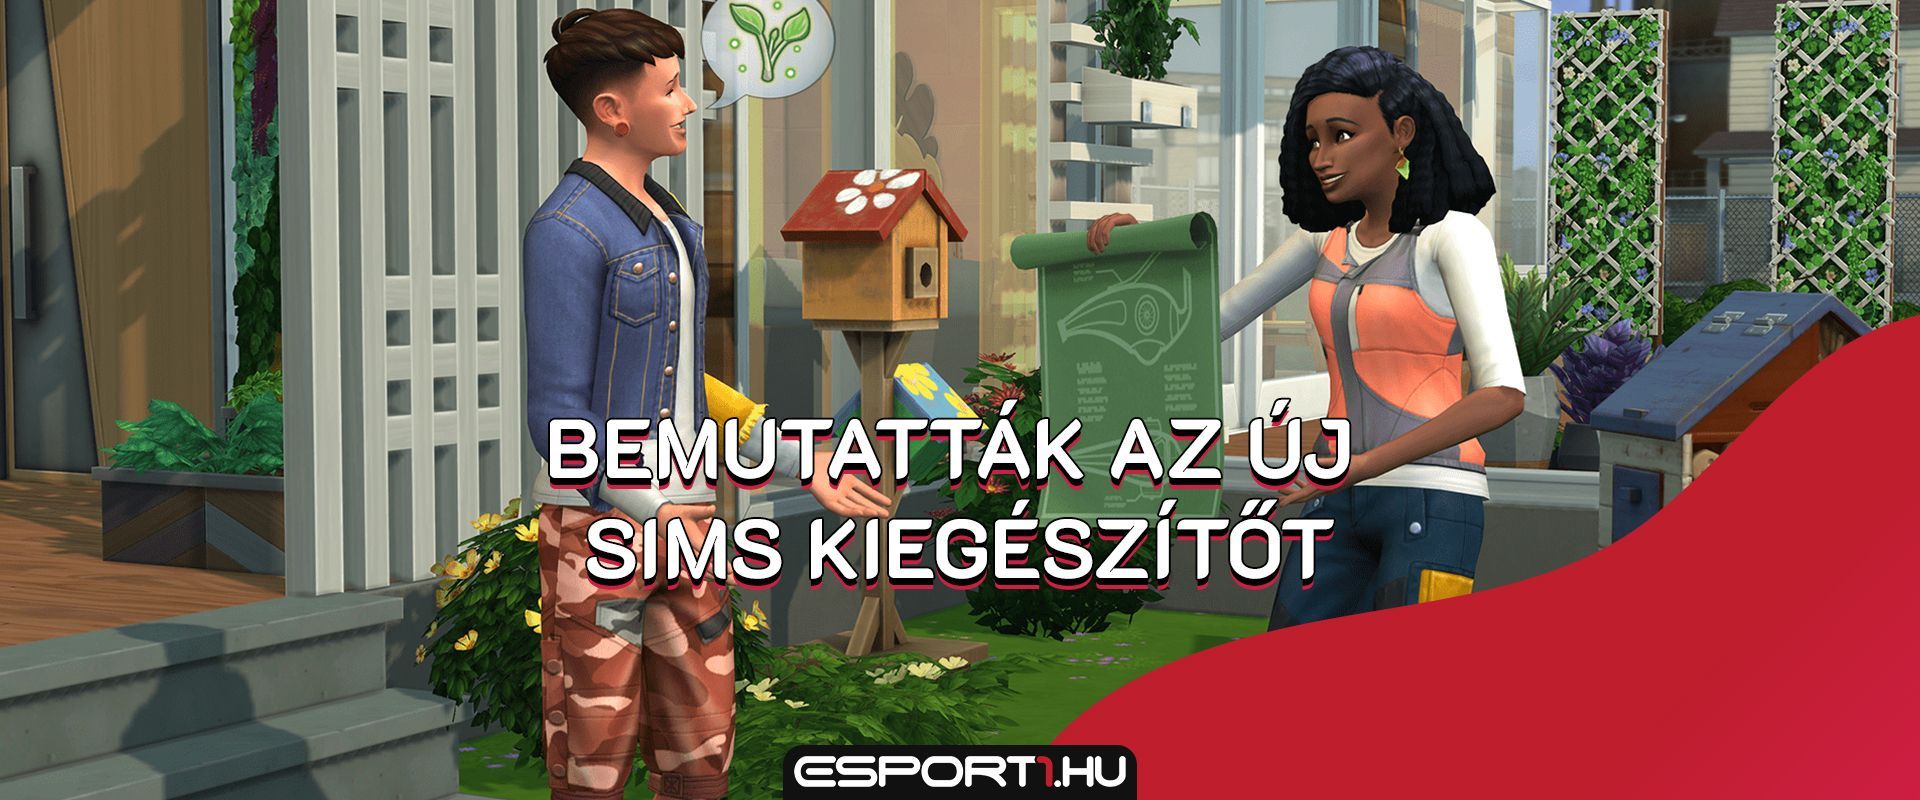 Egy zöldebb világért: Hamarosan érkezik a The Sims 4 új kiegészítője